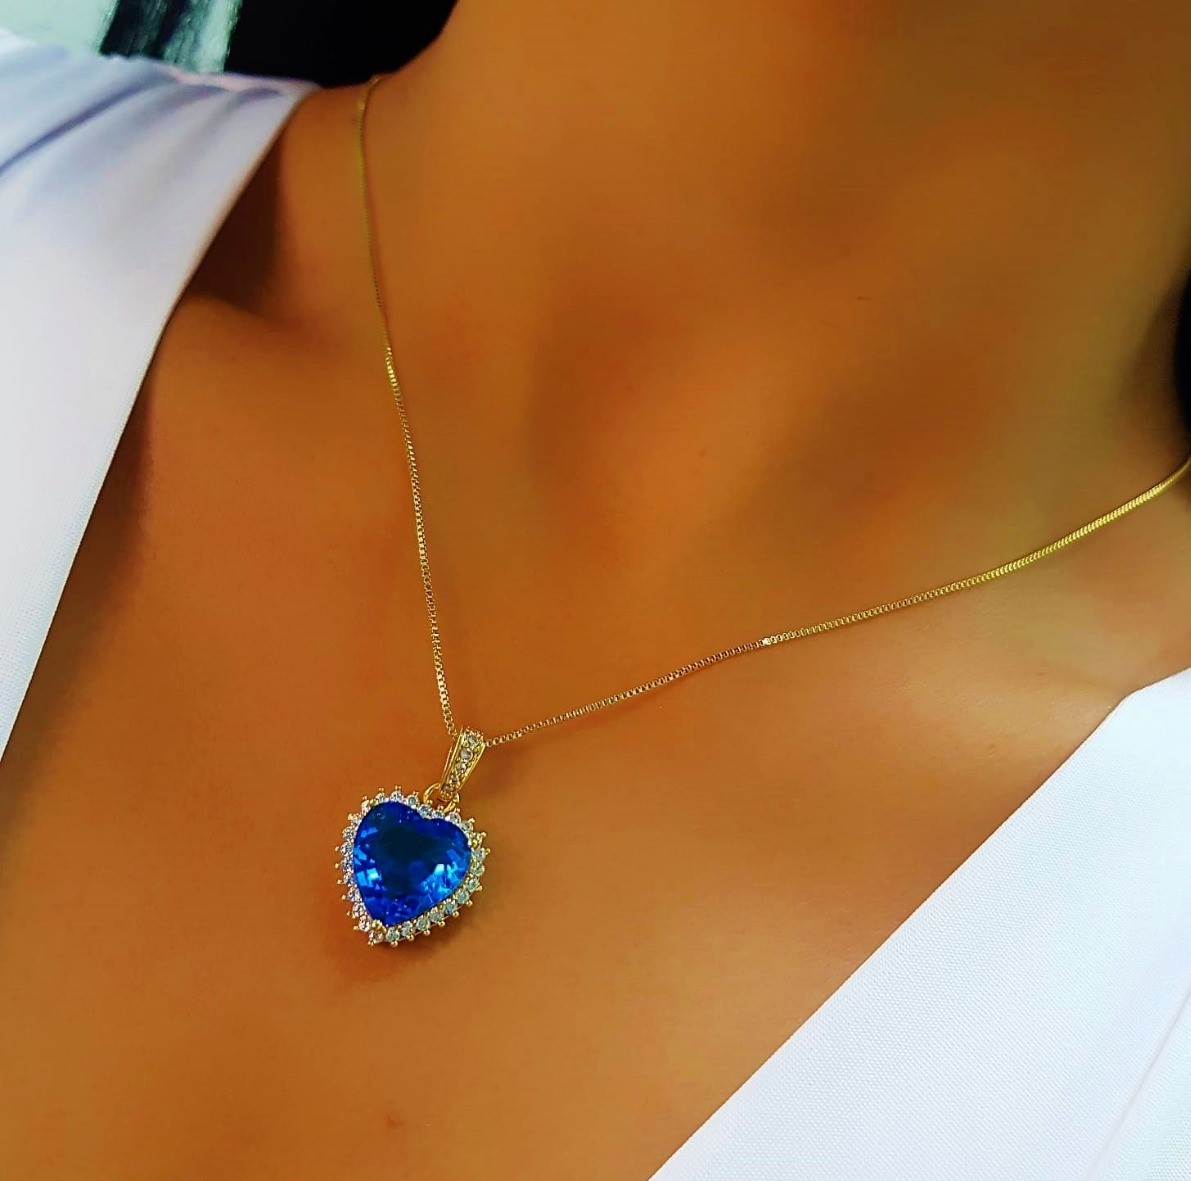 Colar Coração Luxury Azul com Micro Zircônias Banhado em Ouro18k - Lazzuli Joias